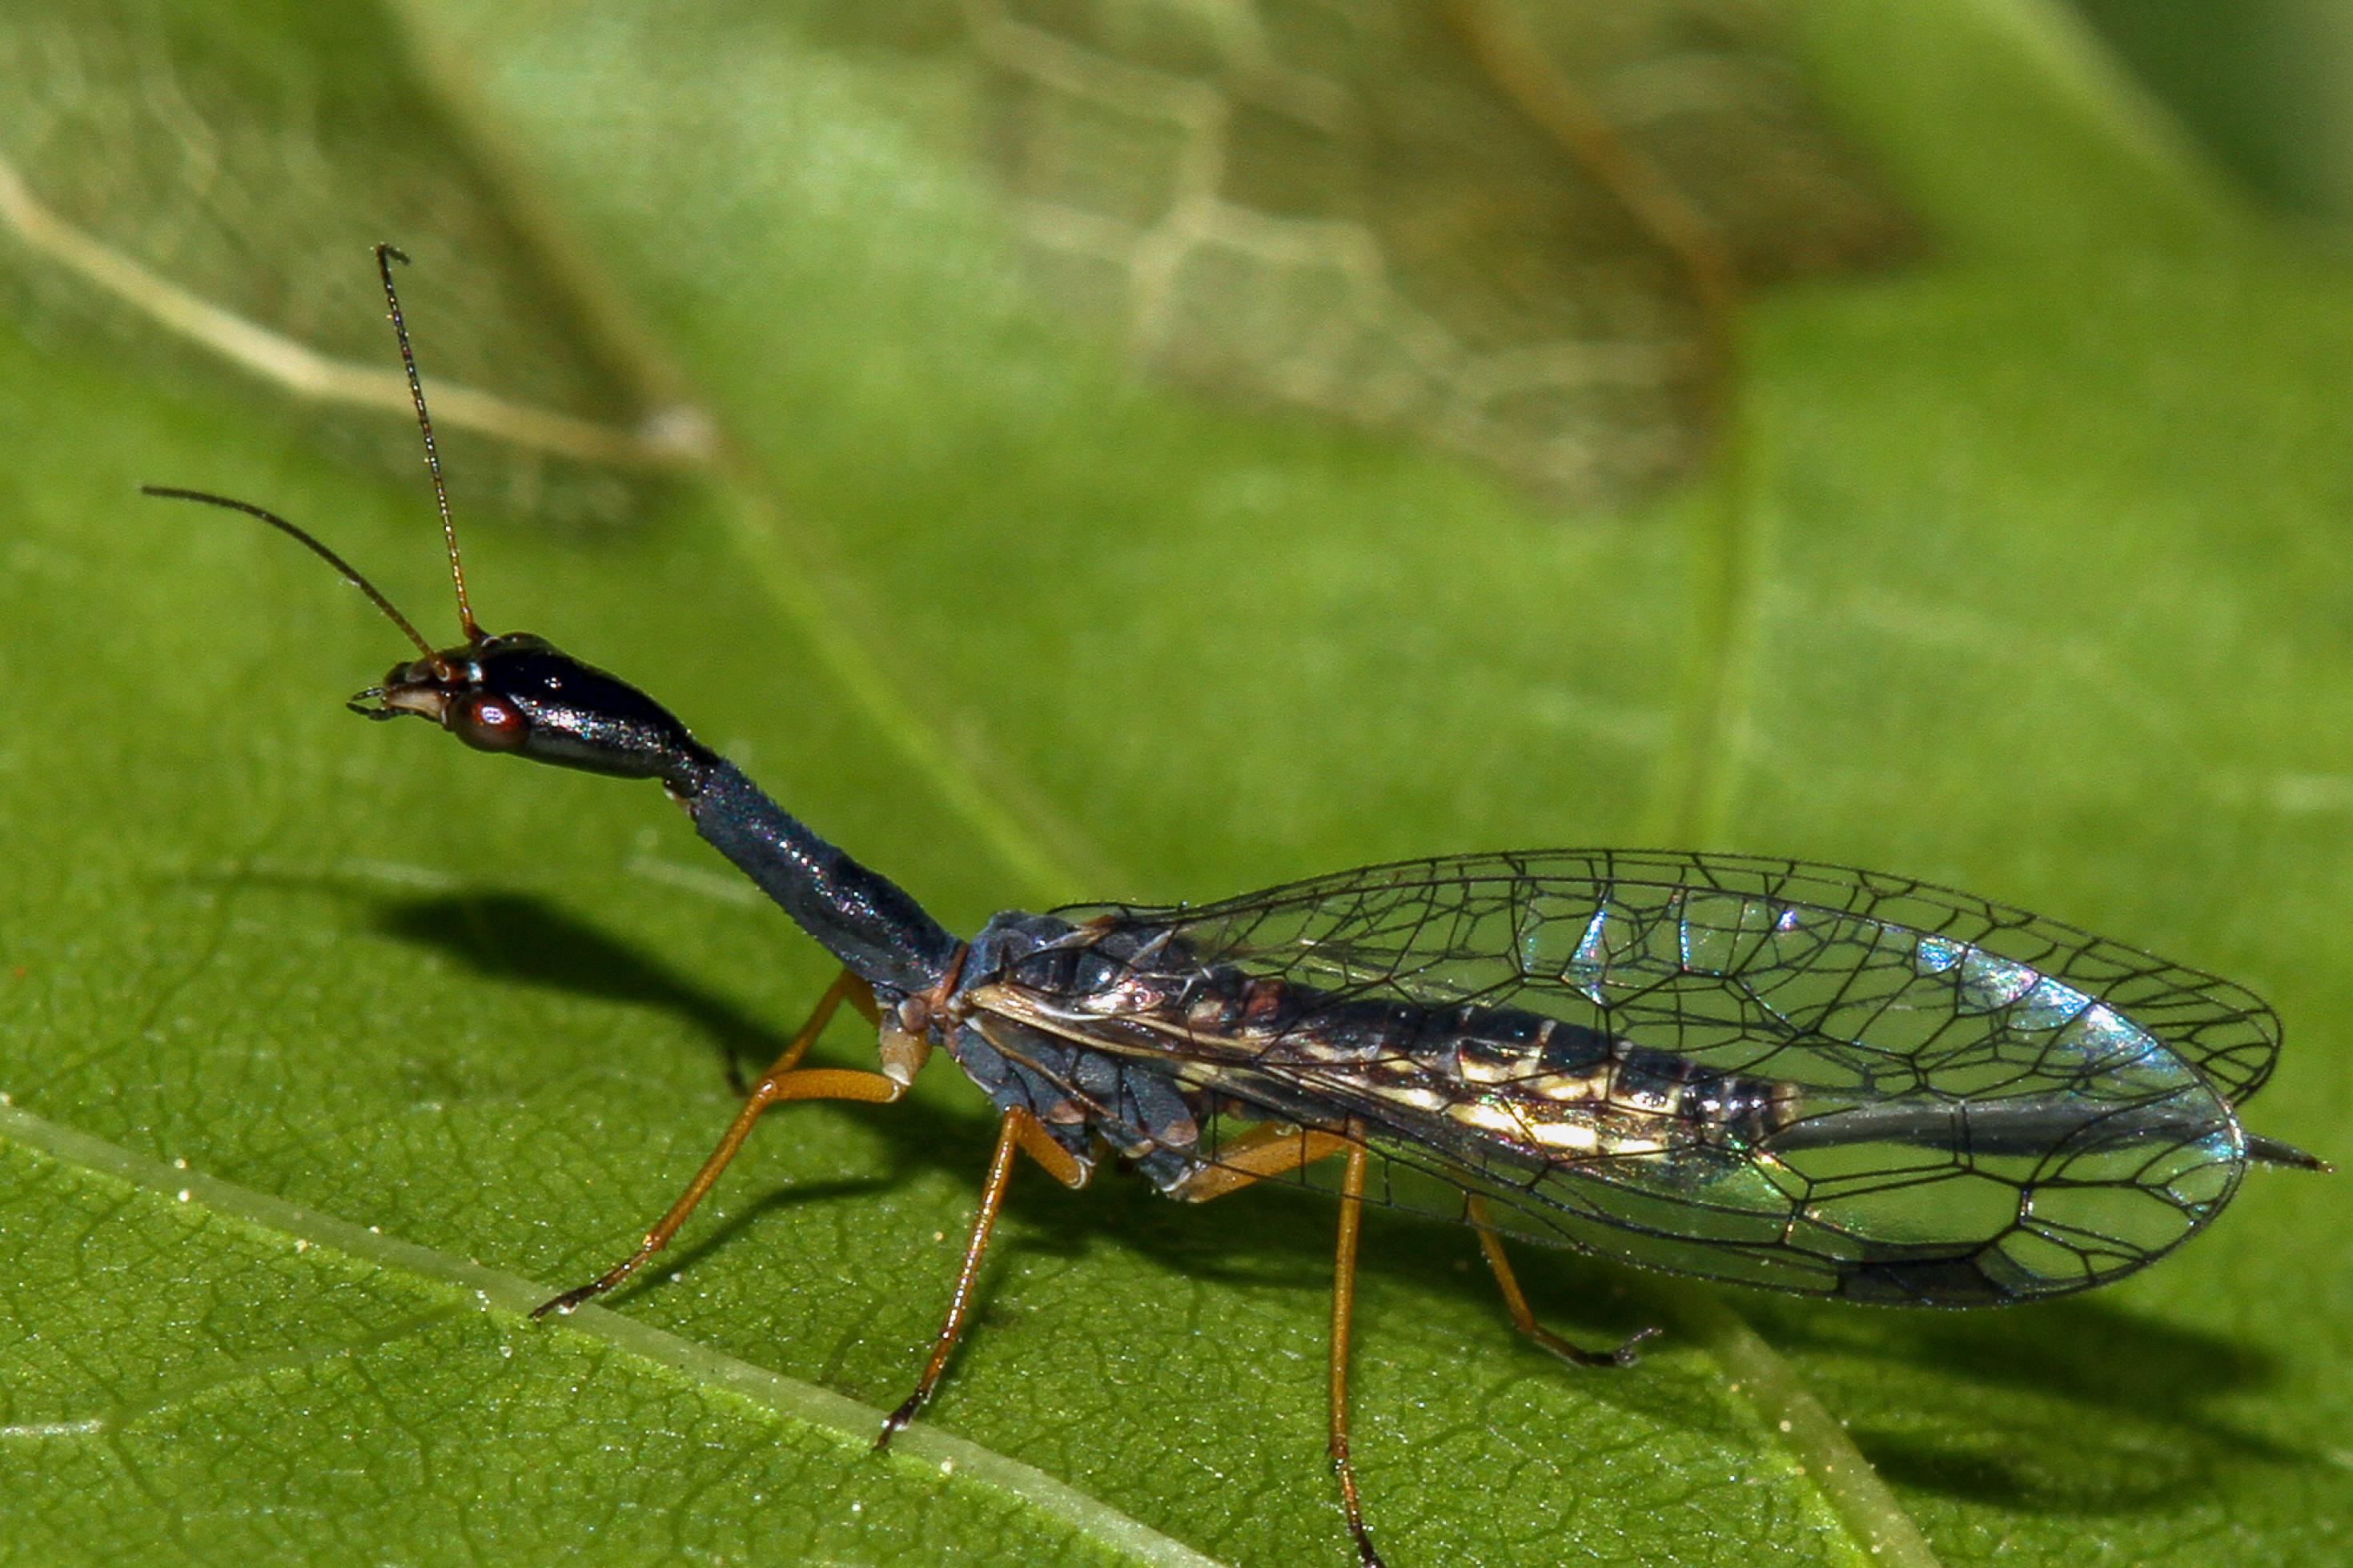 Ein langgezogenes Insekt mit langem schwarzem Hals, roten Augen und länglichen durchsichtigen Flügeln mit schwarzem Gitter sitzt auf einem Blatt.